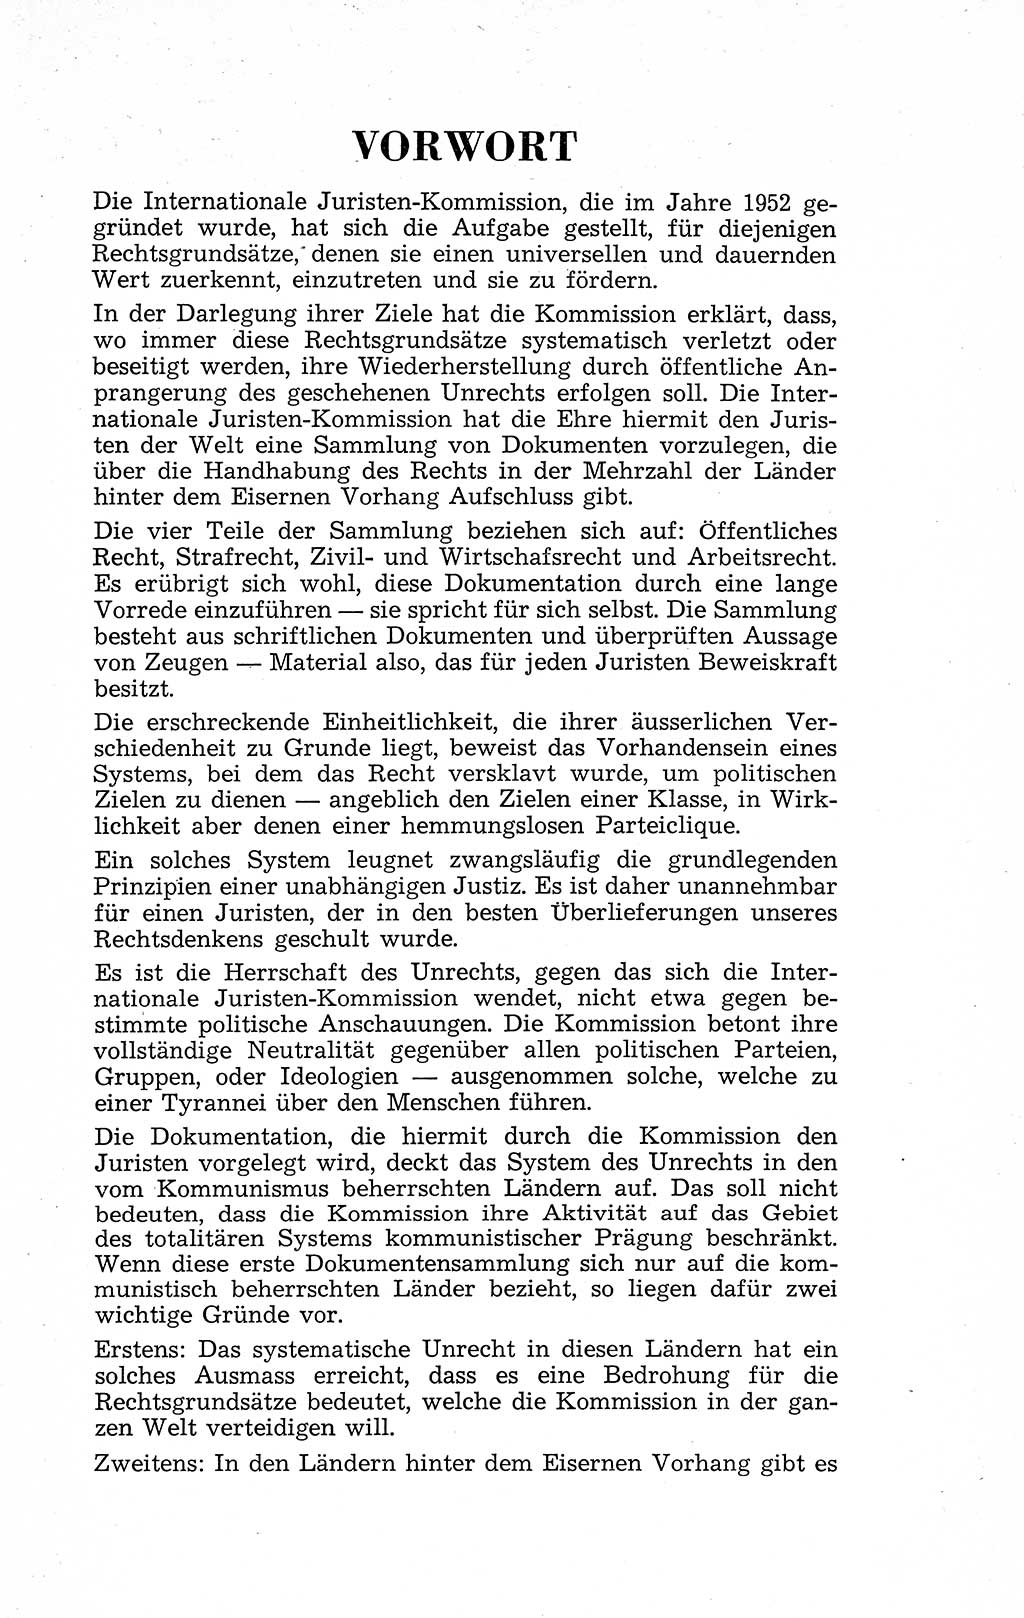 Recht in Fesseln, Dokumente, Internationale Juristen-Kommission [Bundesrepublik Deutschland (BRD)] 1955, Seite 5 (R. Dok. IJK BRD 1955, S. 5)